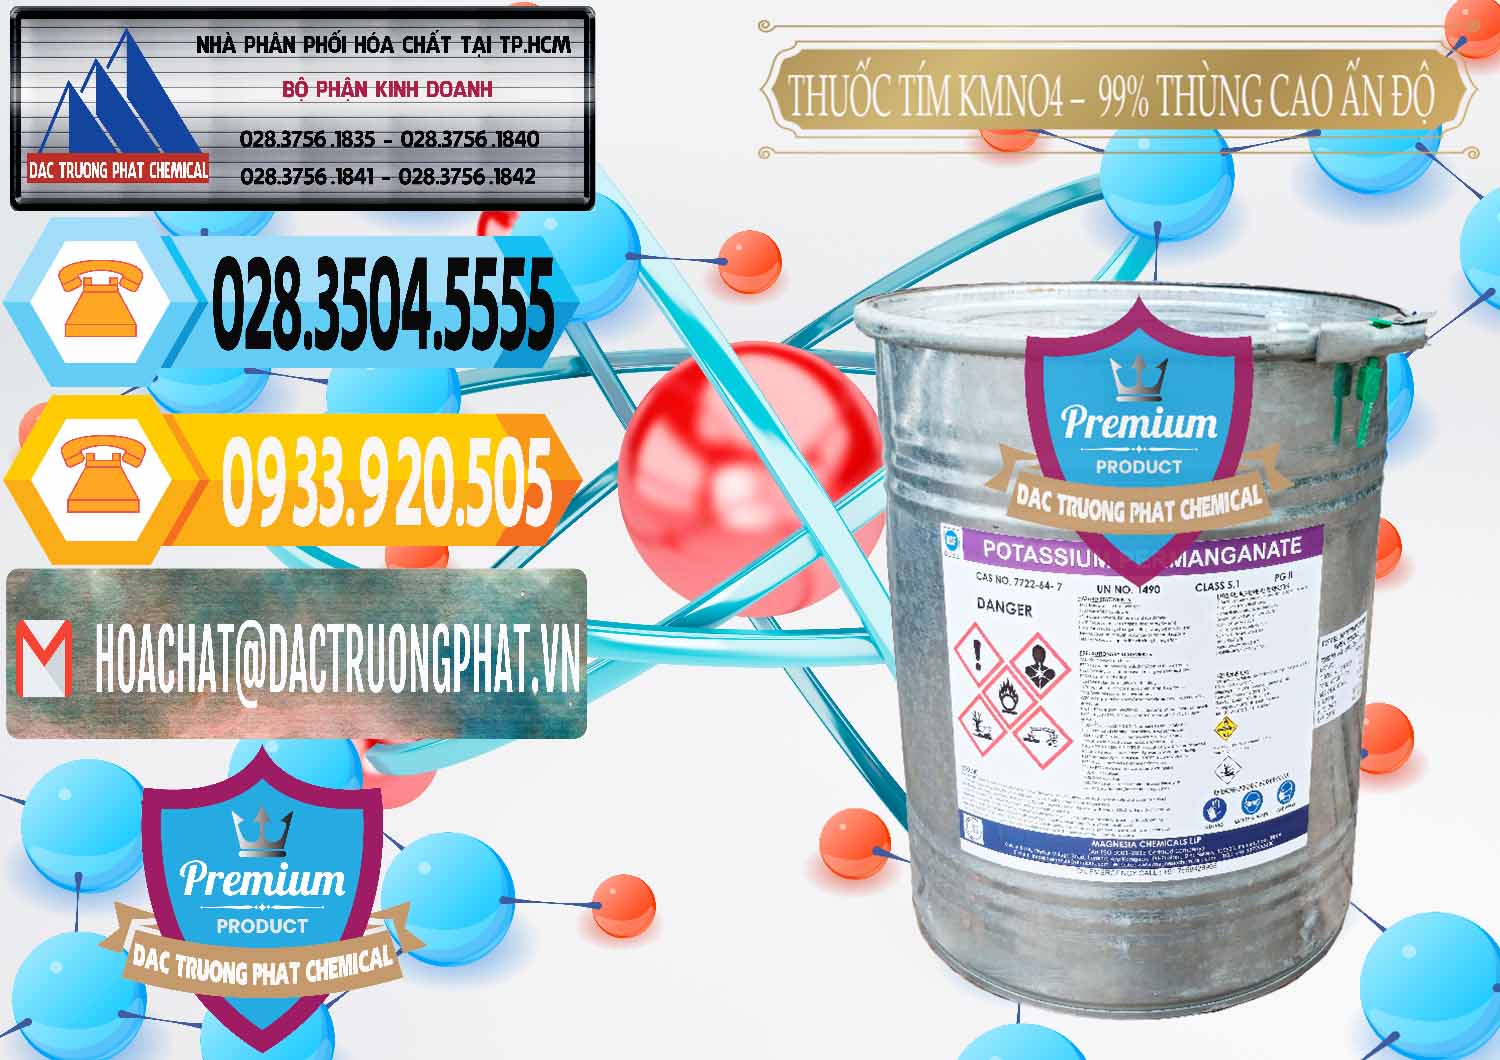 Cty kinh doanh _ bán Thuốc Tím - KMNO4 Thùng Cao 99% Magnesia Chemicals Ấn Độ India - 0164 - Đơn vị nhập khẩu _ phân phối hóa chất tại TP.HCM - hoachattayrua.net